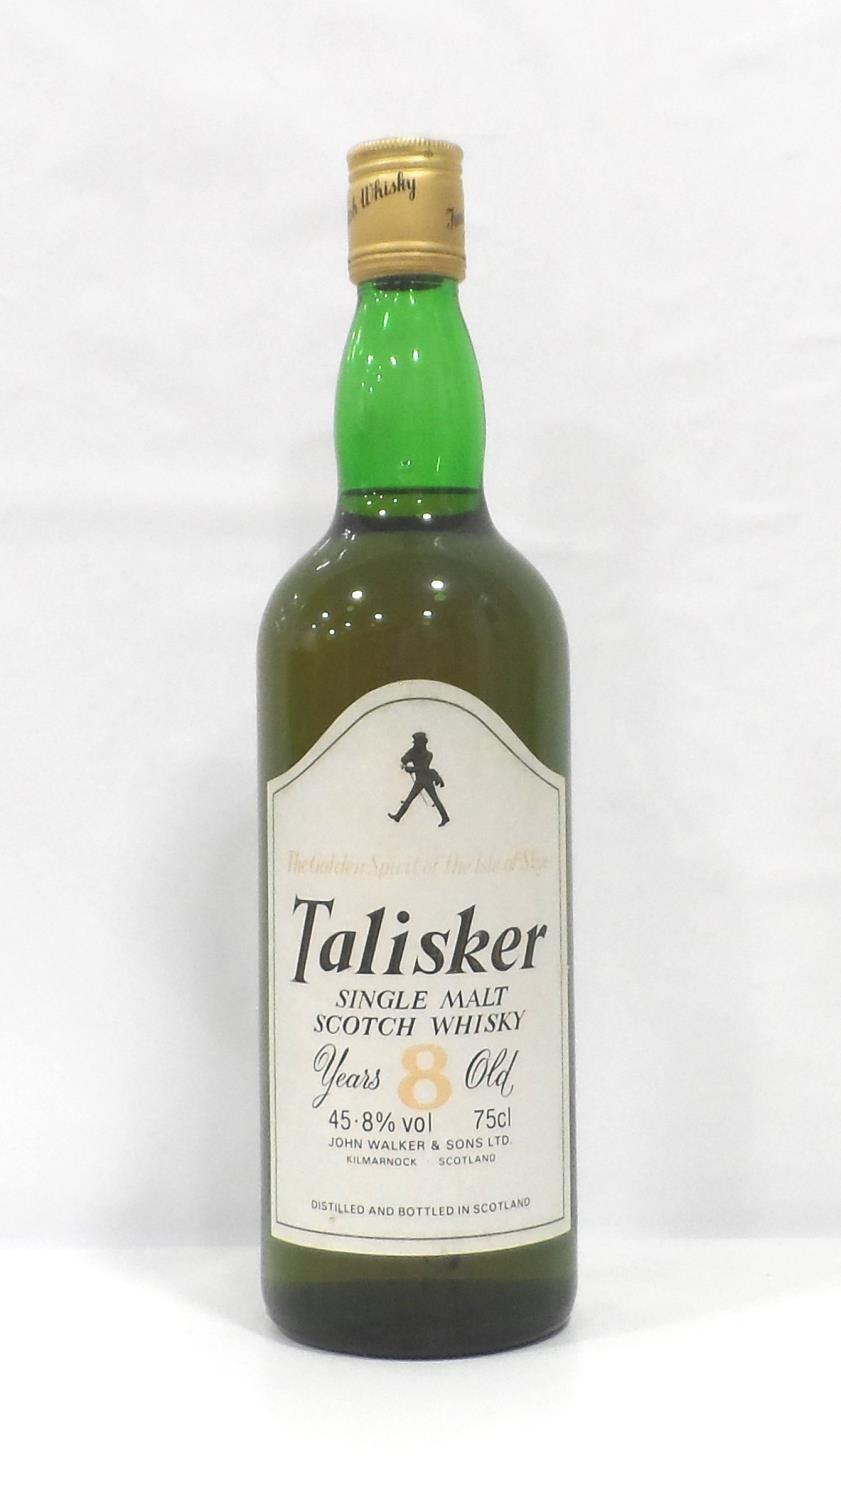 TALISKER 8YO An older bottling of the Talisker 8 Year Old Single Malt Scotch Whisky bottled by